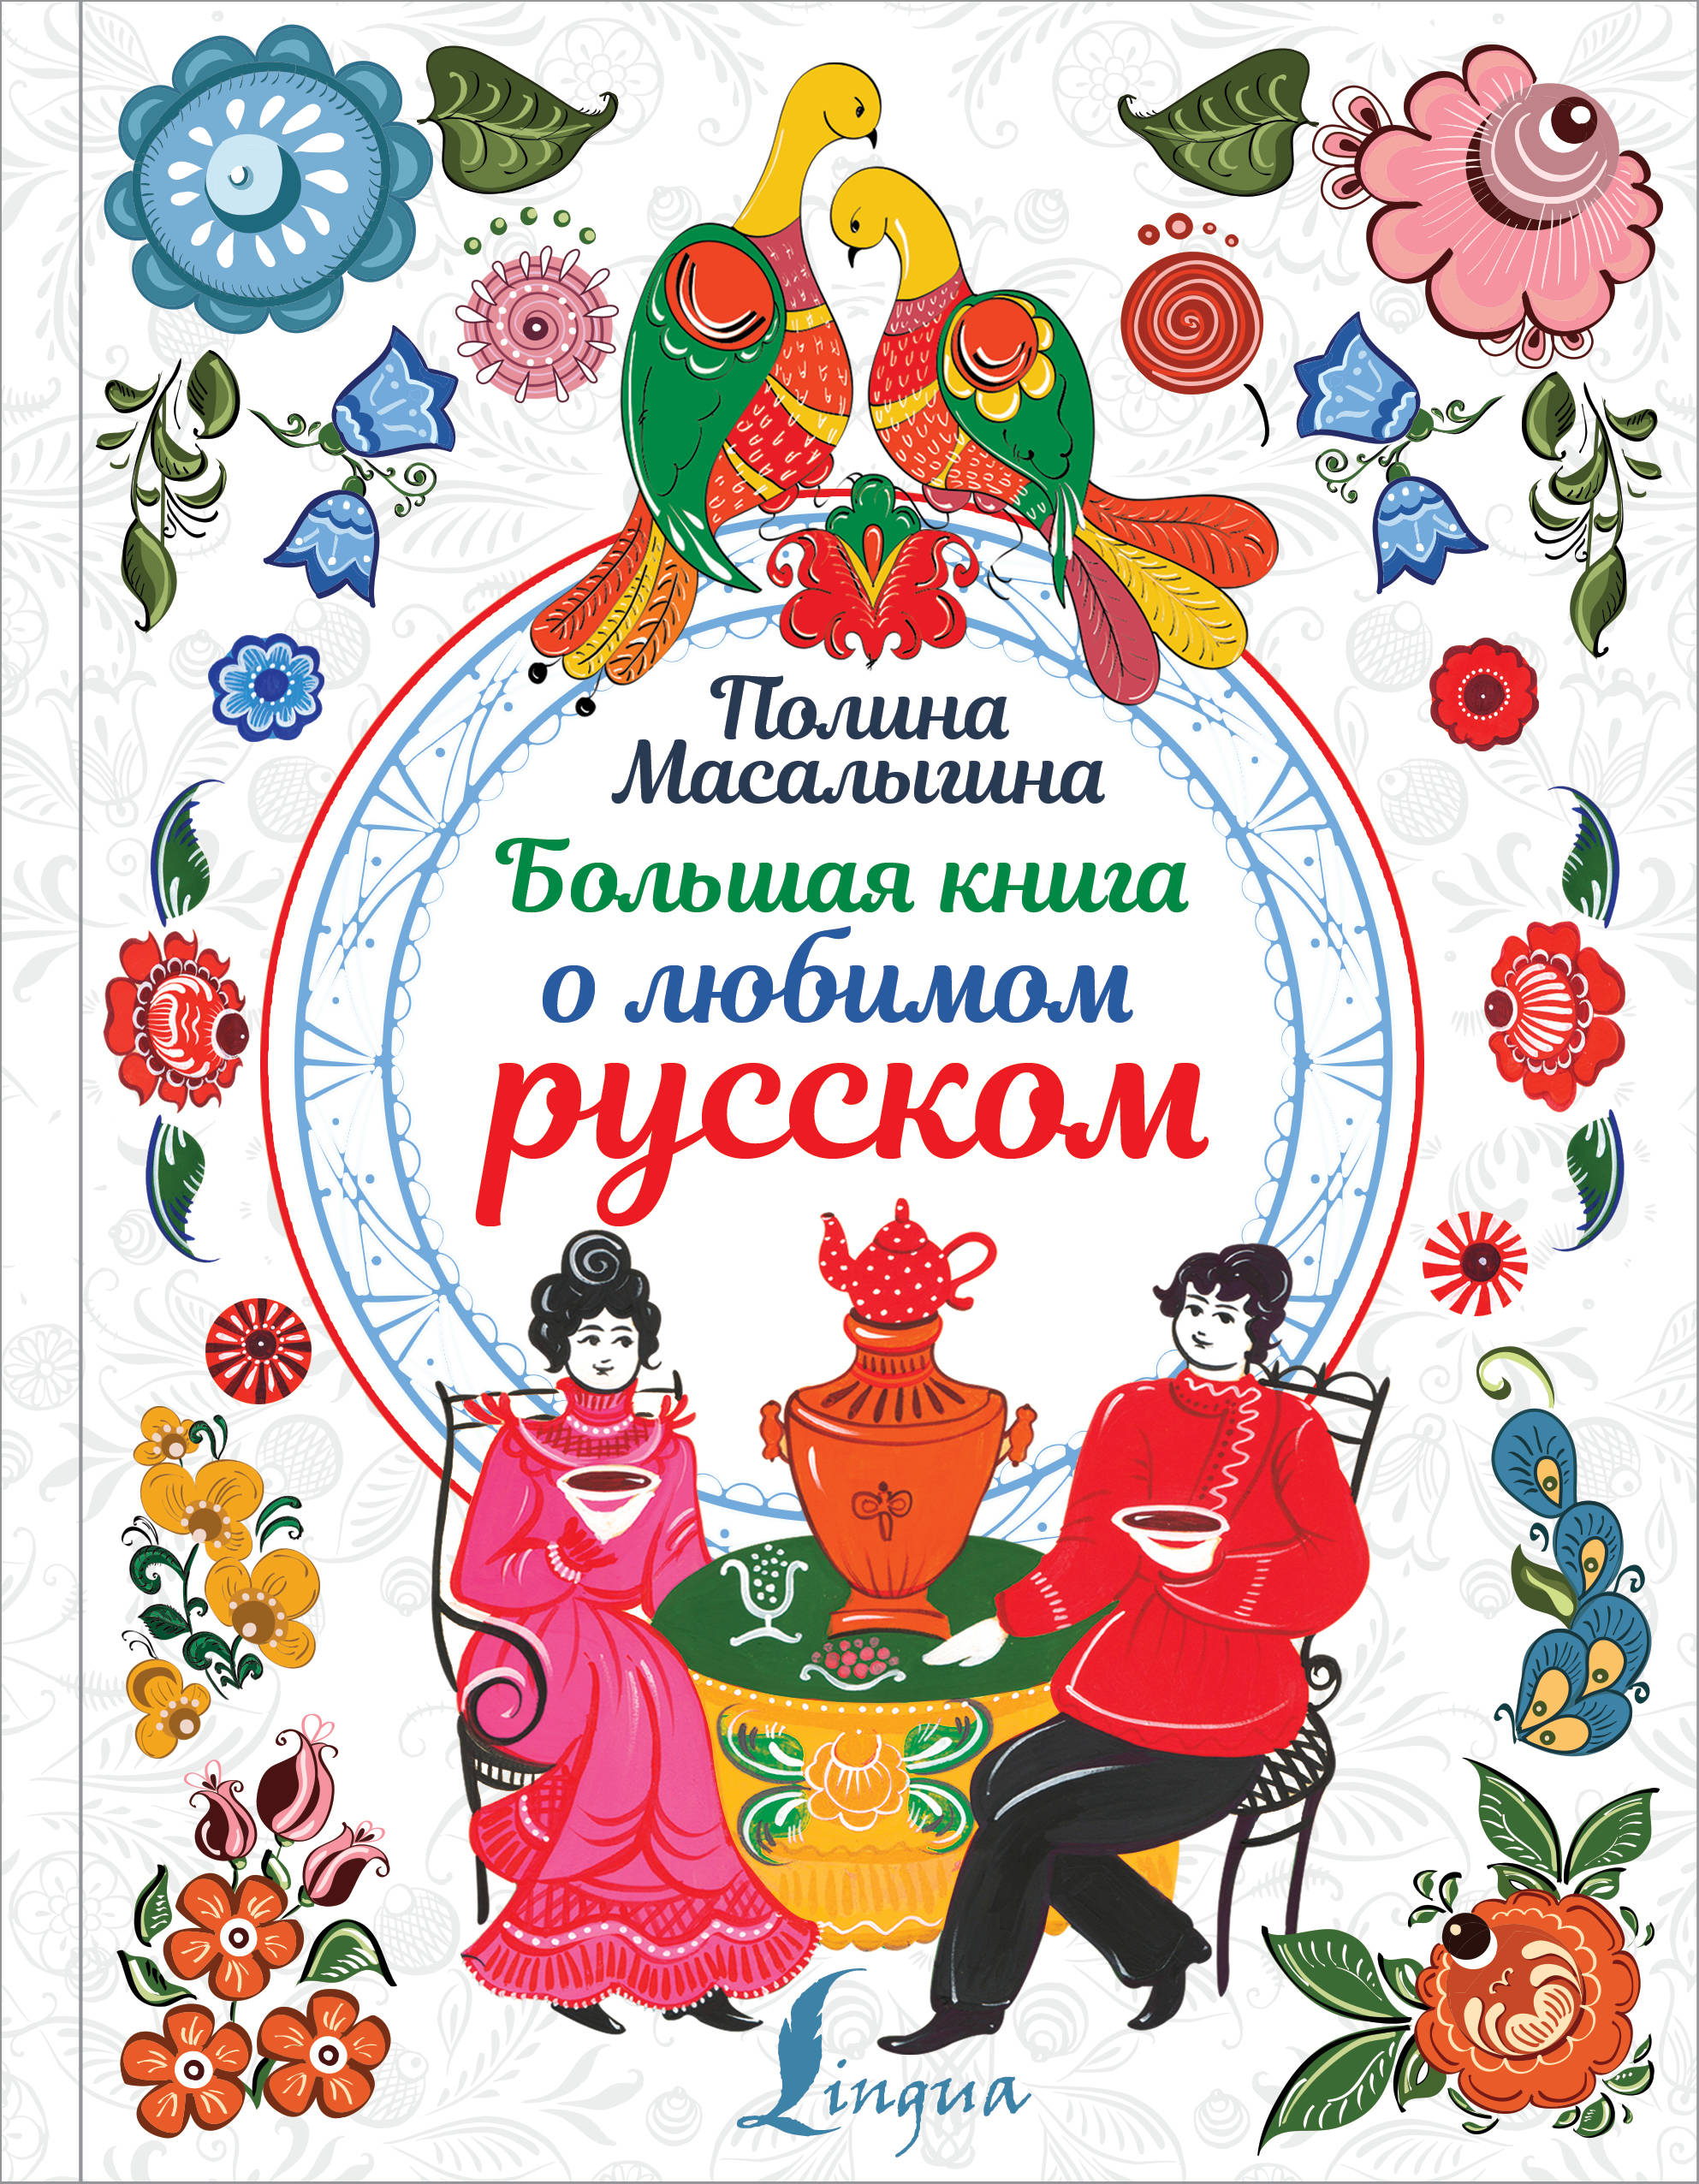 Масалыгина Полина Николаевна Большая книга о любимом русском